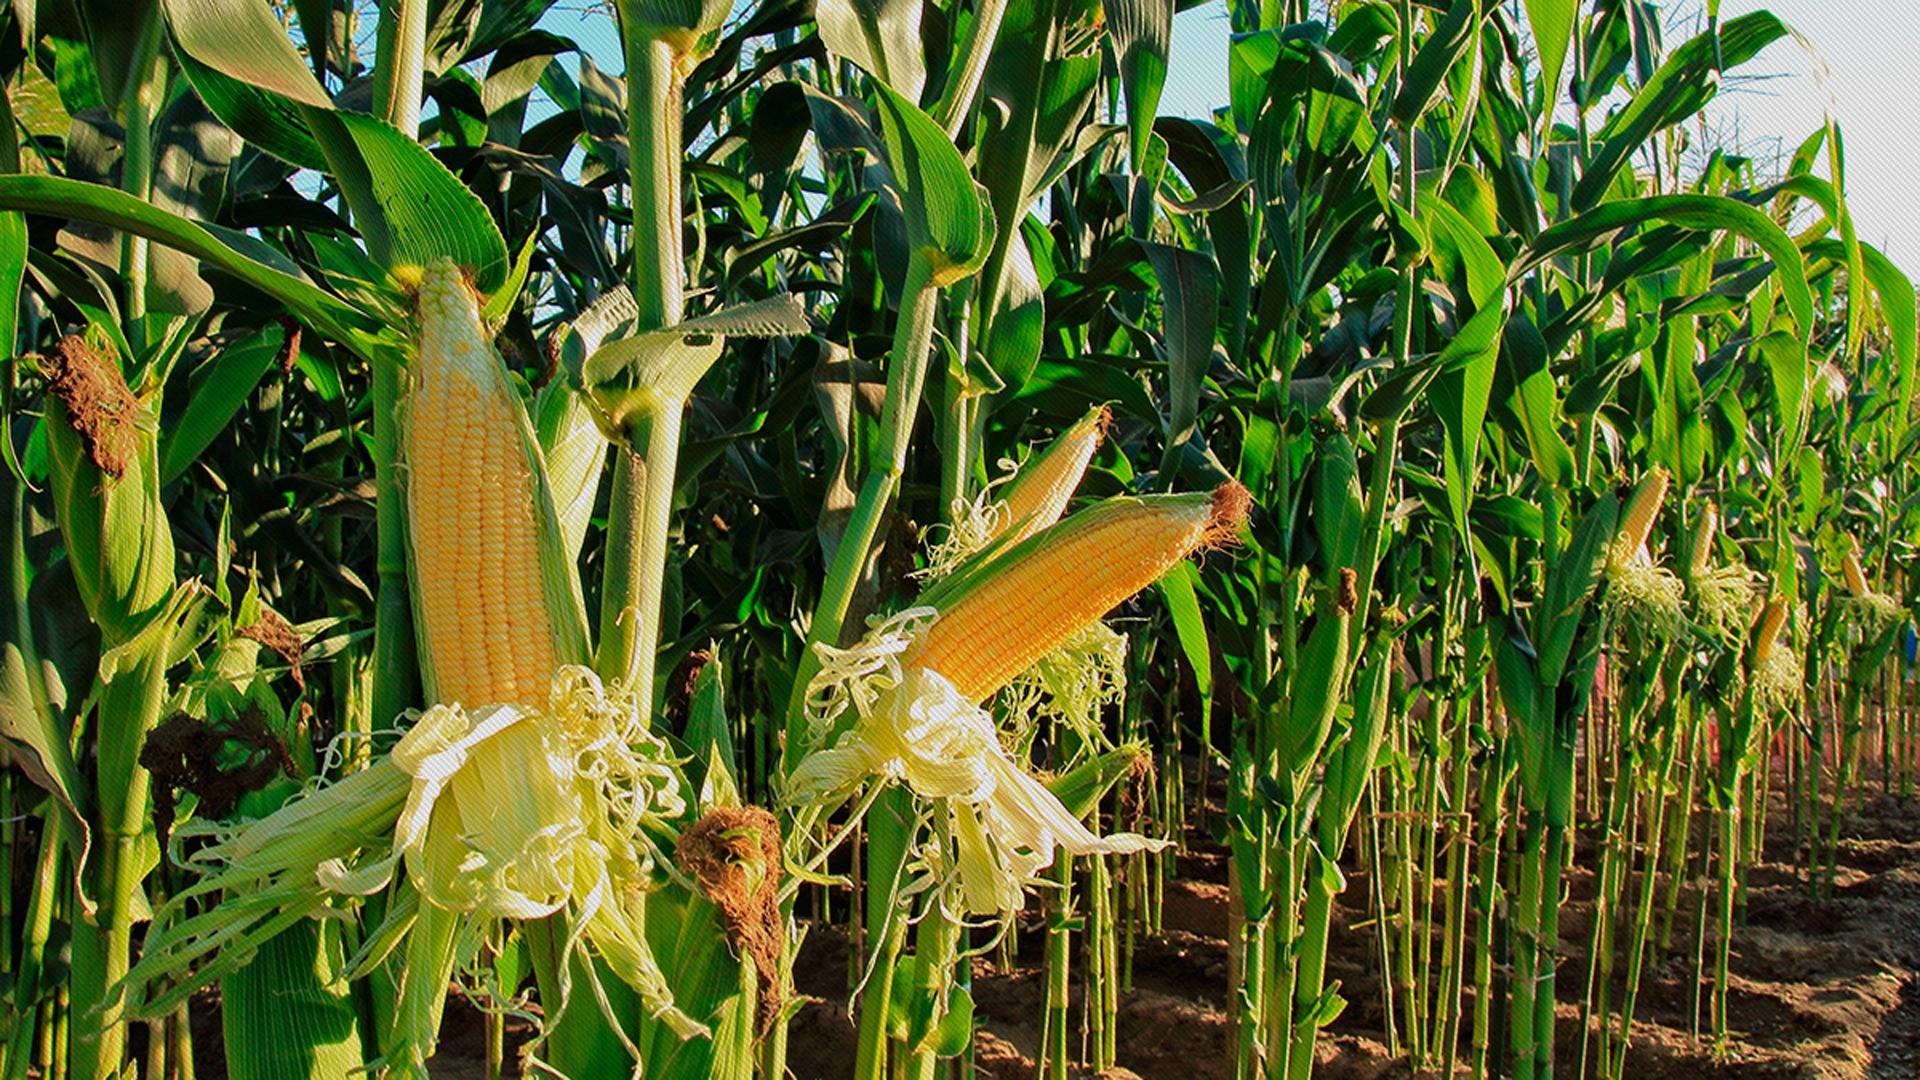 Se sembraron casi 2 M ha de maíz en la región, pero la chicharrita limitó la cosecha a 14,5 Mt 